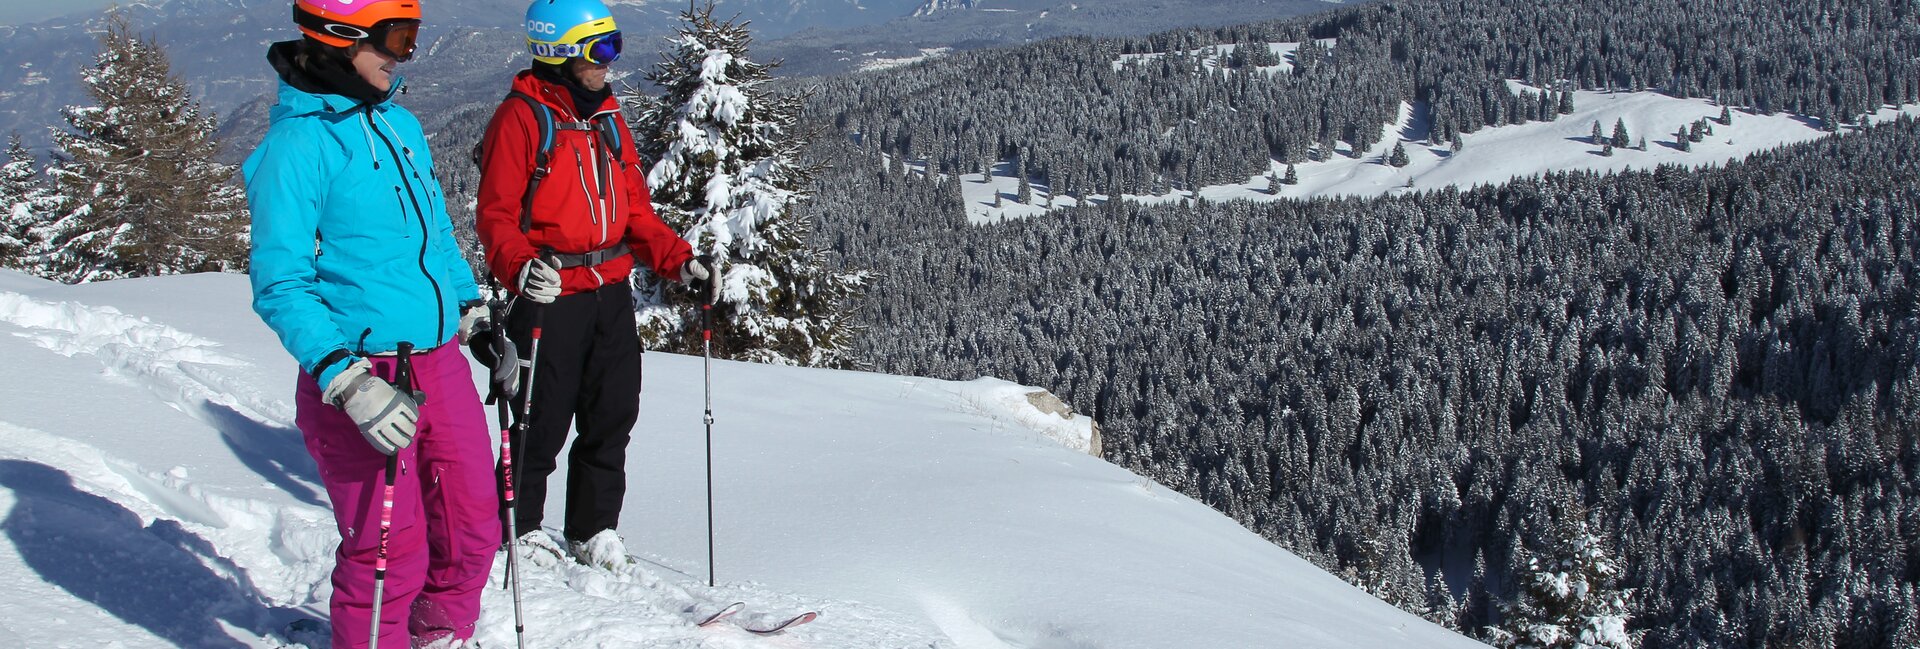 Folgaria Fiorentini skiing district - Skitour dei Forti - Snow forecast